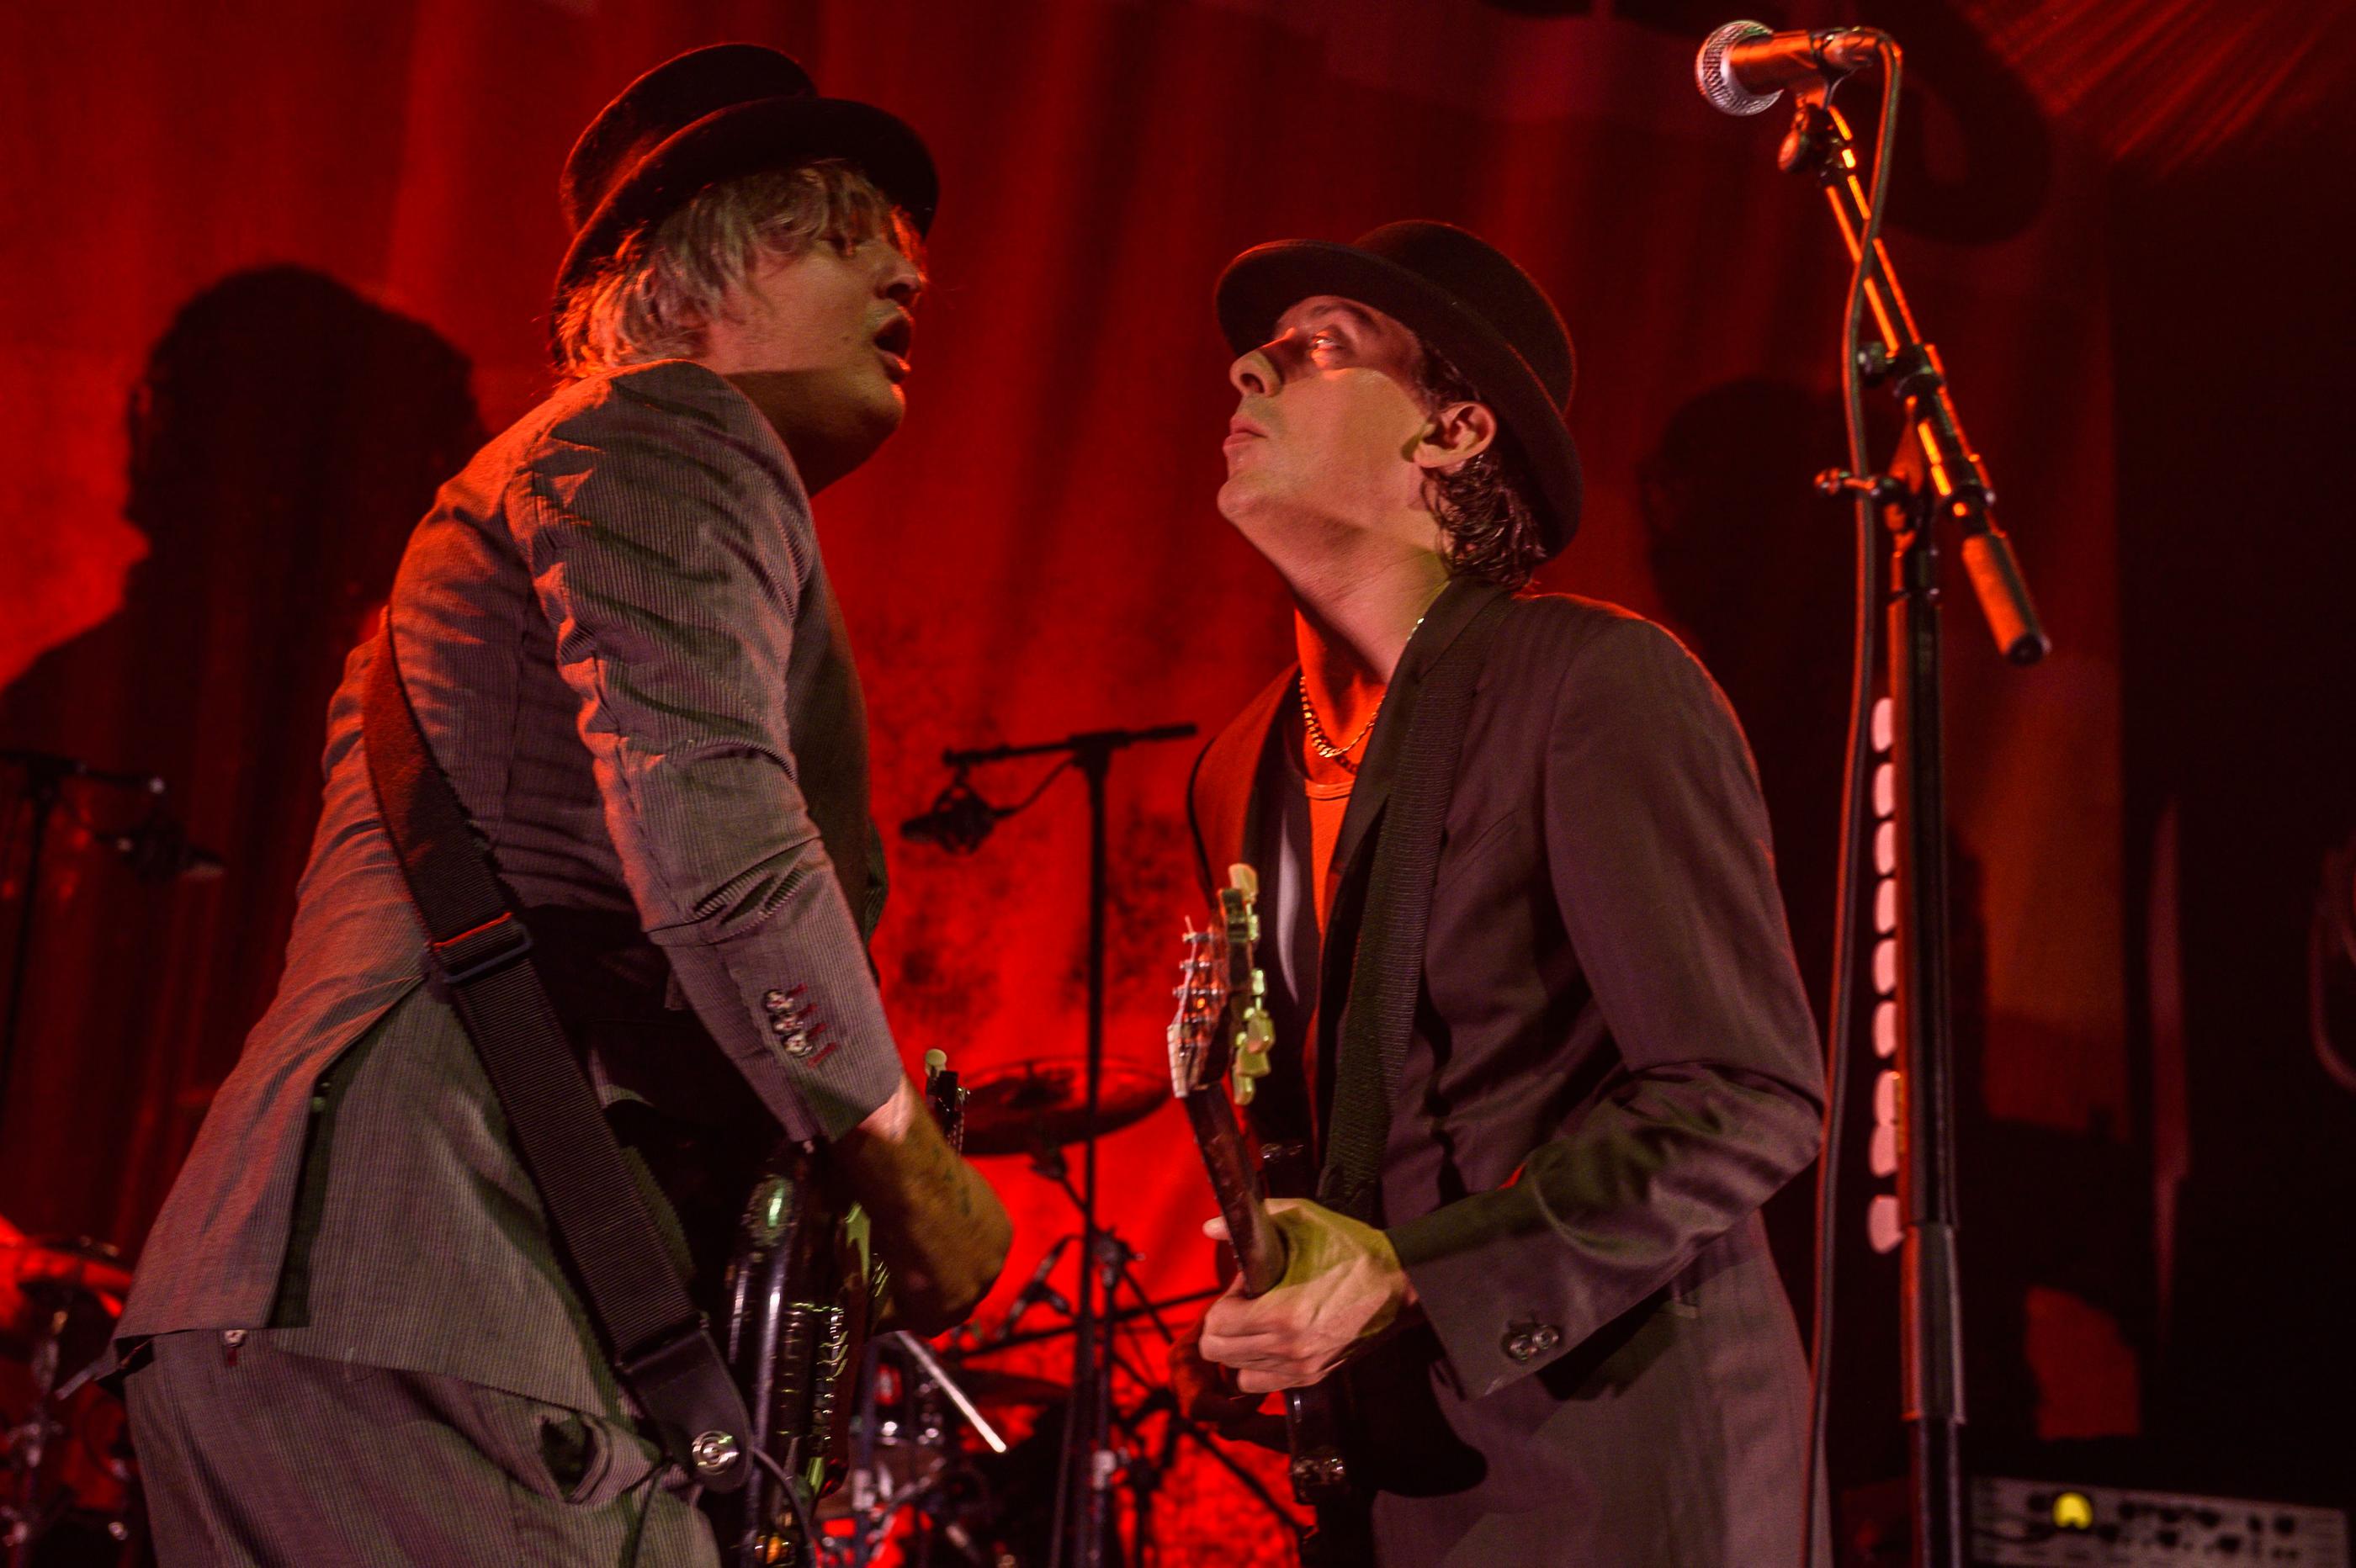 Pete Doherty et Carl Barât, le duo du groupe de rock britannique The Libertines, seront les têtes d'affiche de la 35e édition du festival des Inrocks. Jean-Marc Quinet